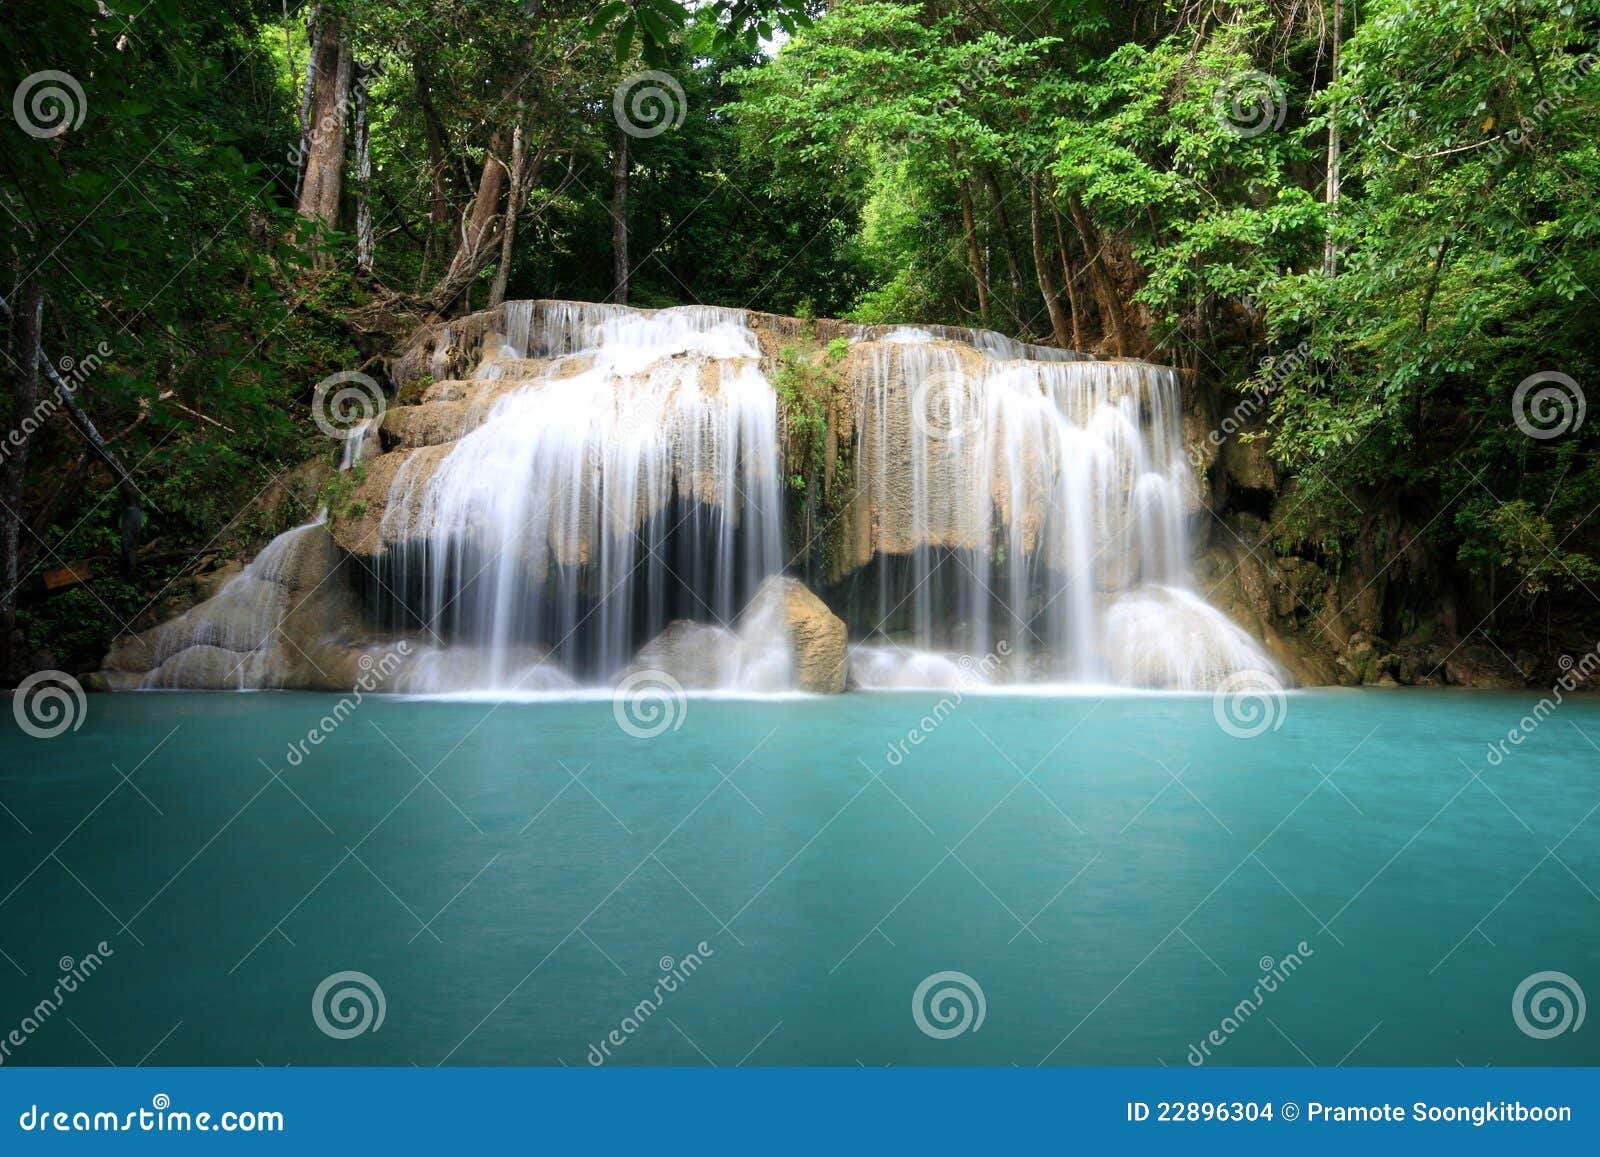 beutiful waterfall